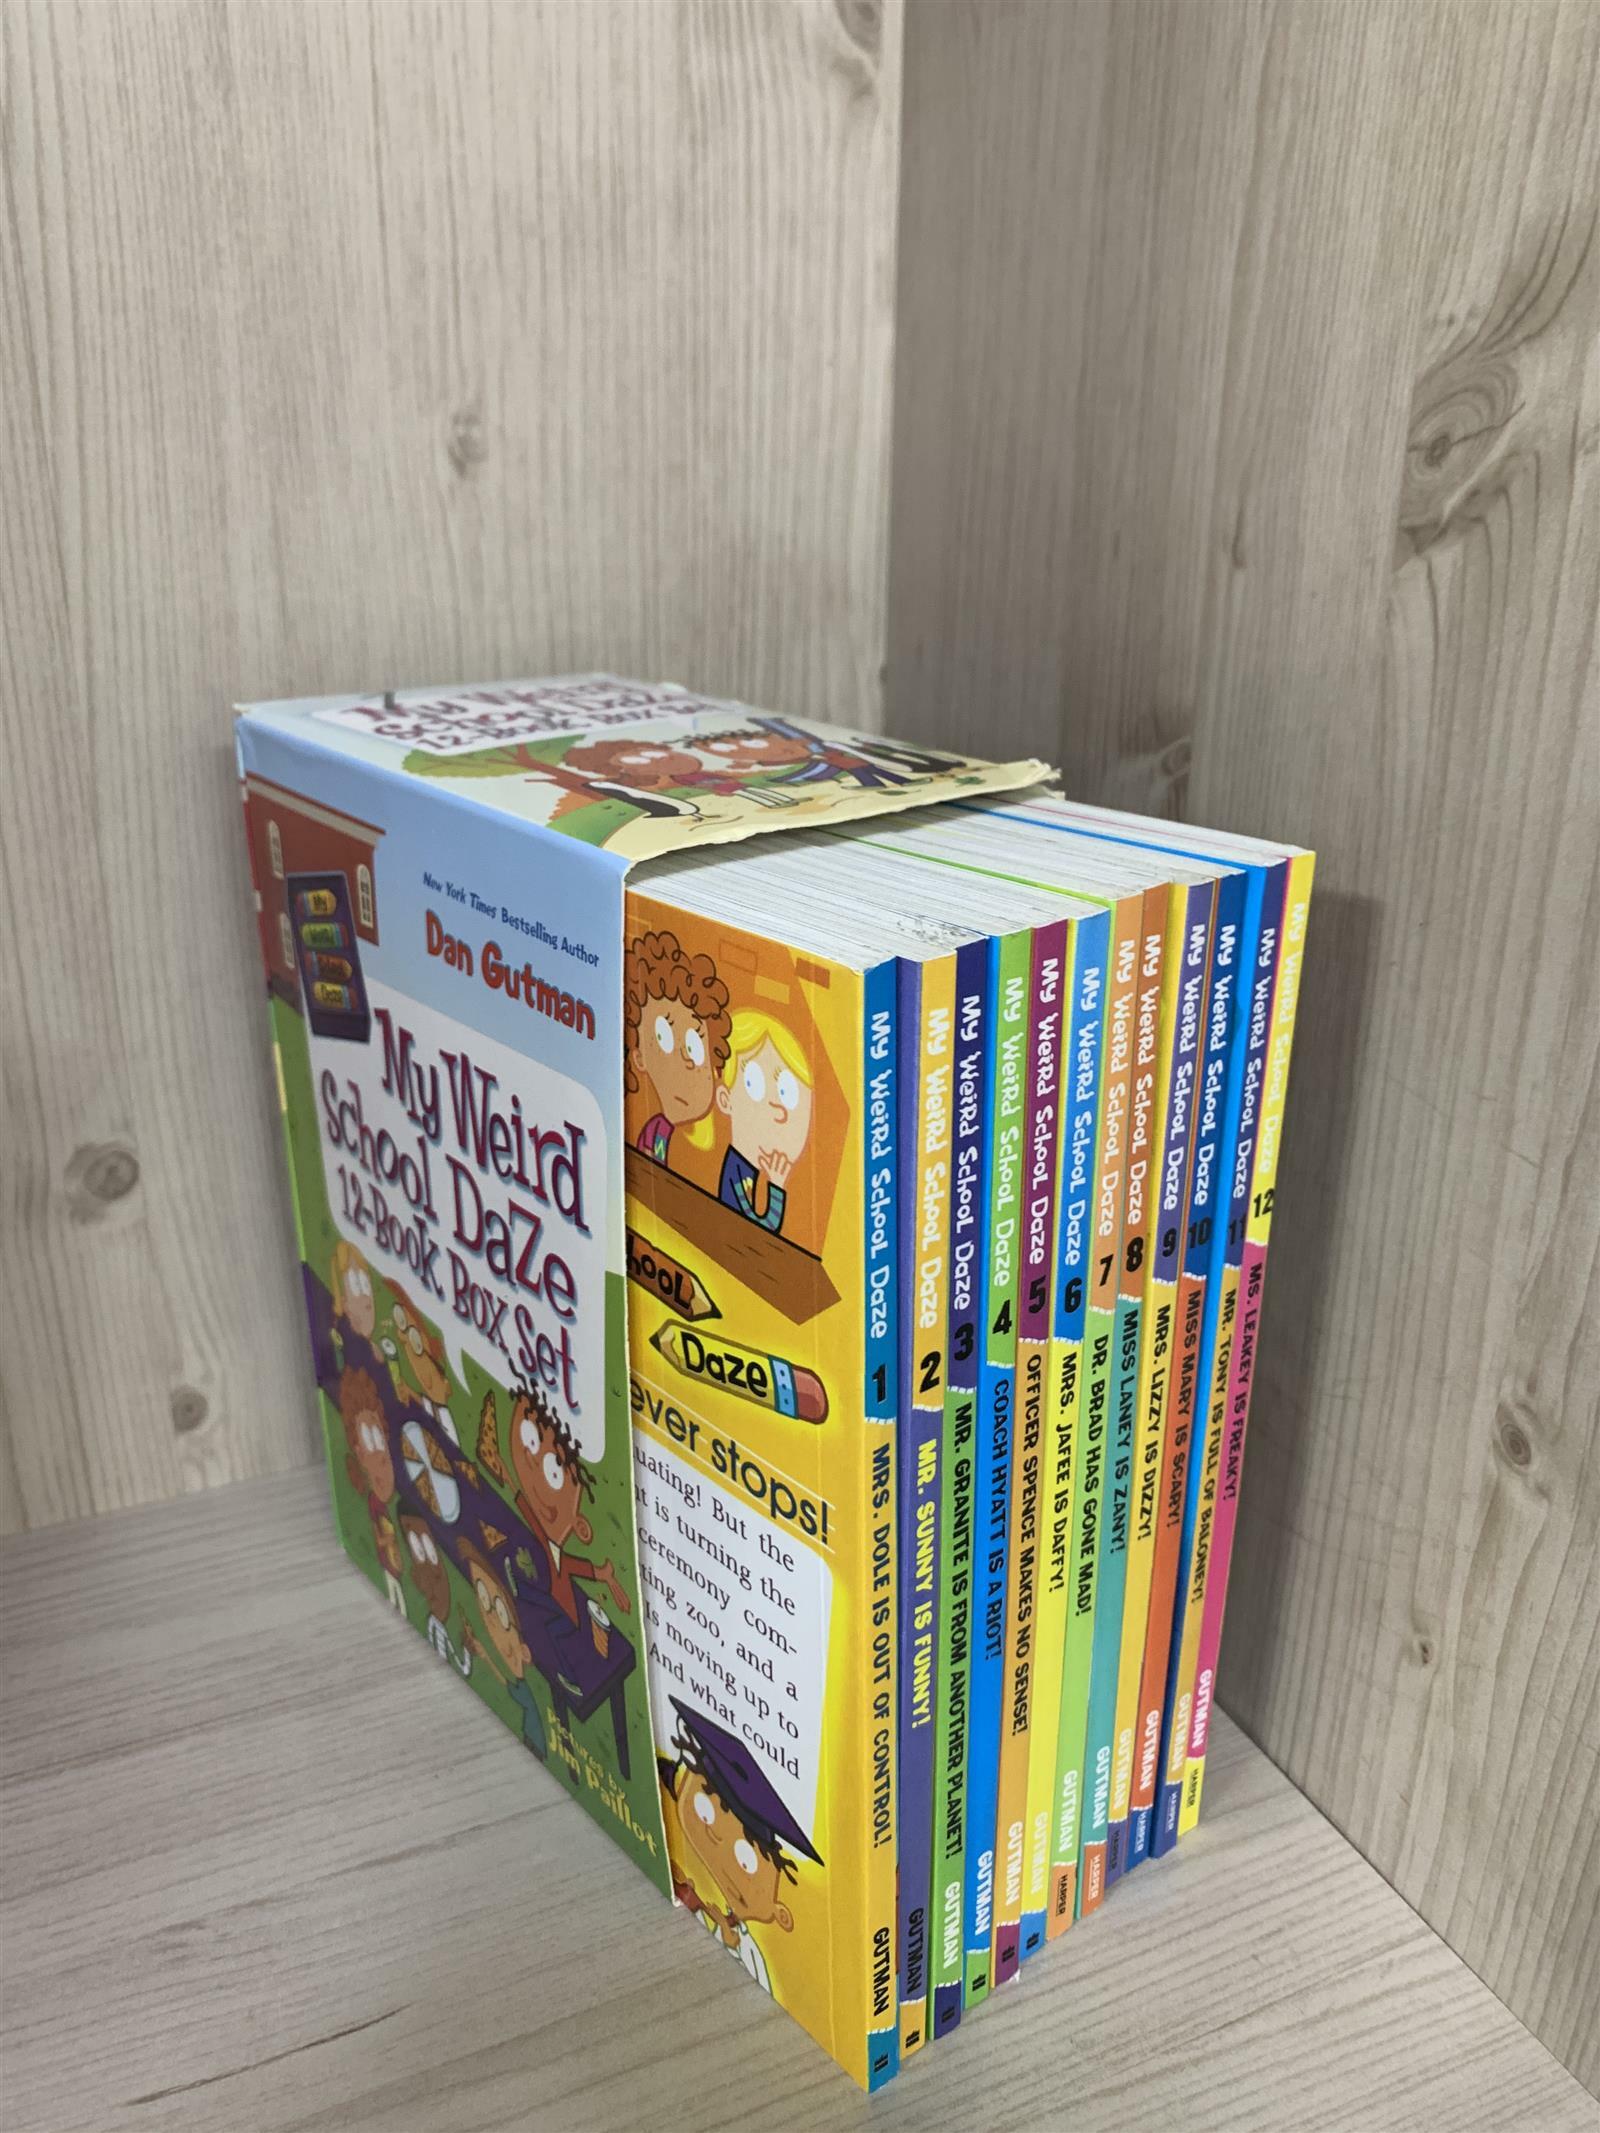 [중고] My Weird School Daze 12-Book Box Set: Books 1-12 (Paperback)